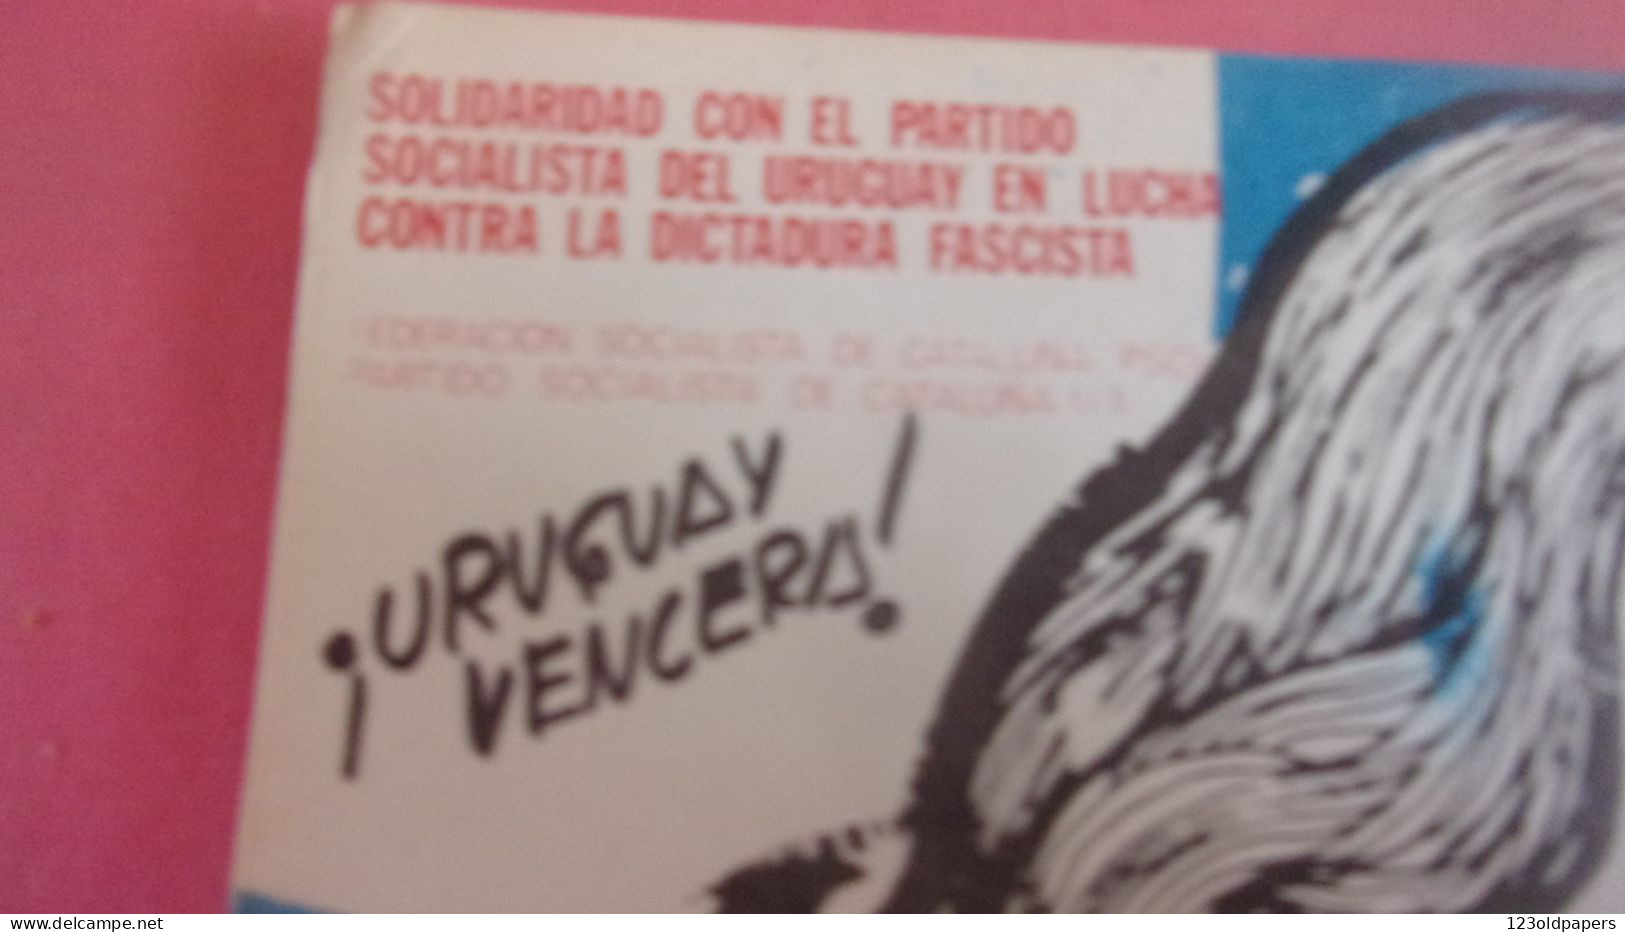 URUGUAY VENCERA SOLIDARIDAD PARTIDO SOCIALISTA CONTRA LA DICTATURE FASCISTA CATALUNA ESPAGNE ILLUSTRATEUR - Uruguay